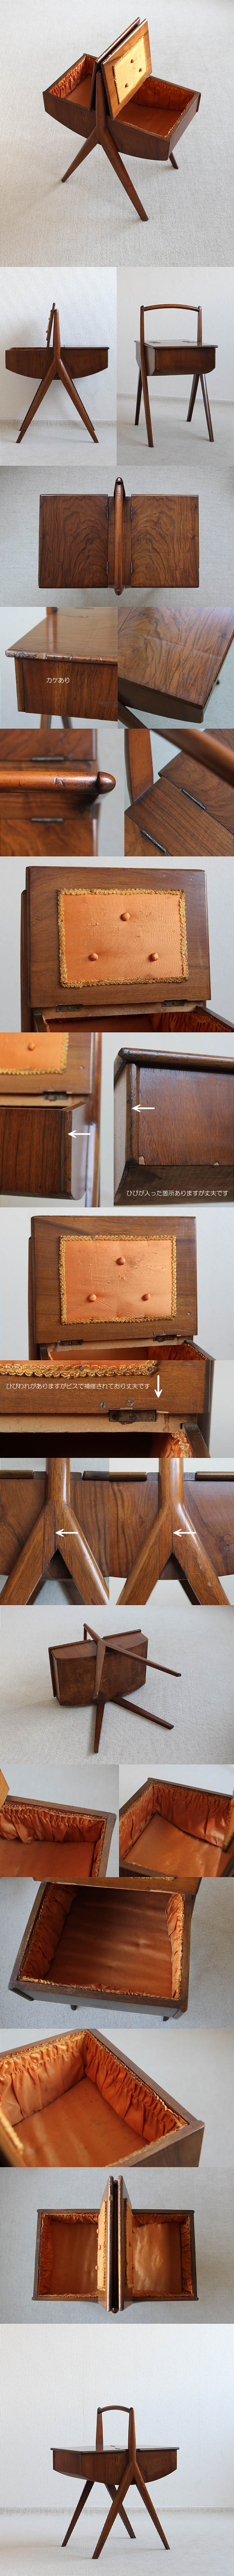 イギリス ヴィンテージ ソーイングボックス 木製 裁縫箱 北欧家具「ミッドセンチュリー」P-074